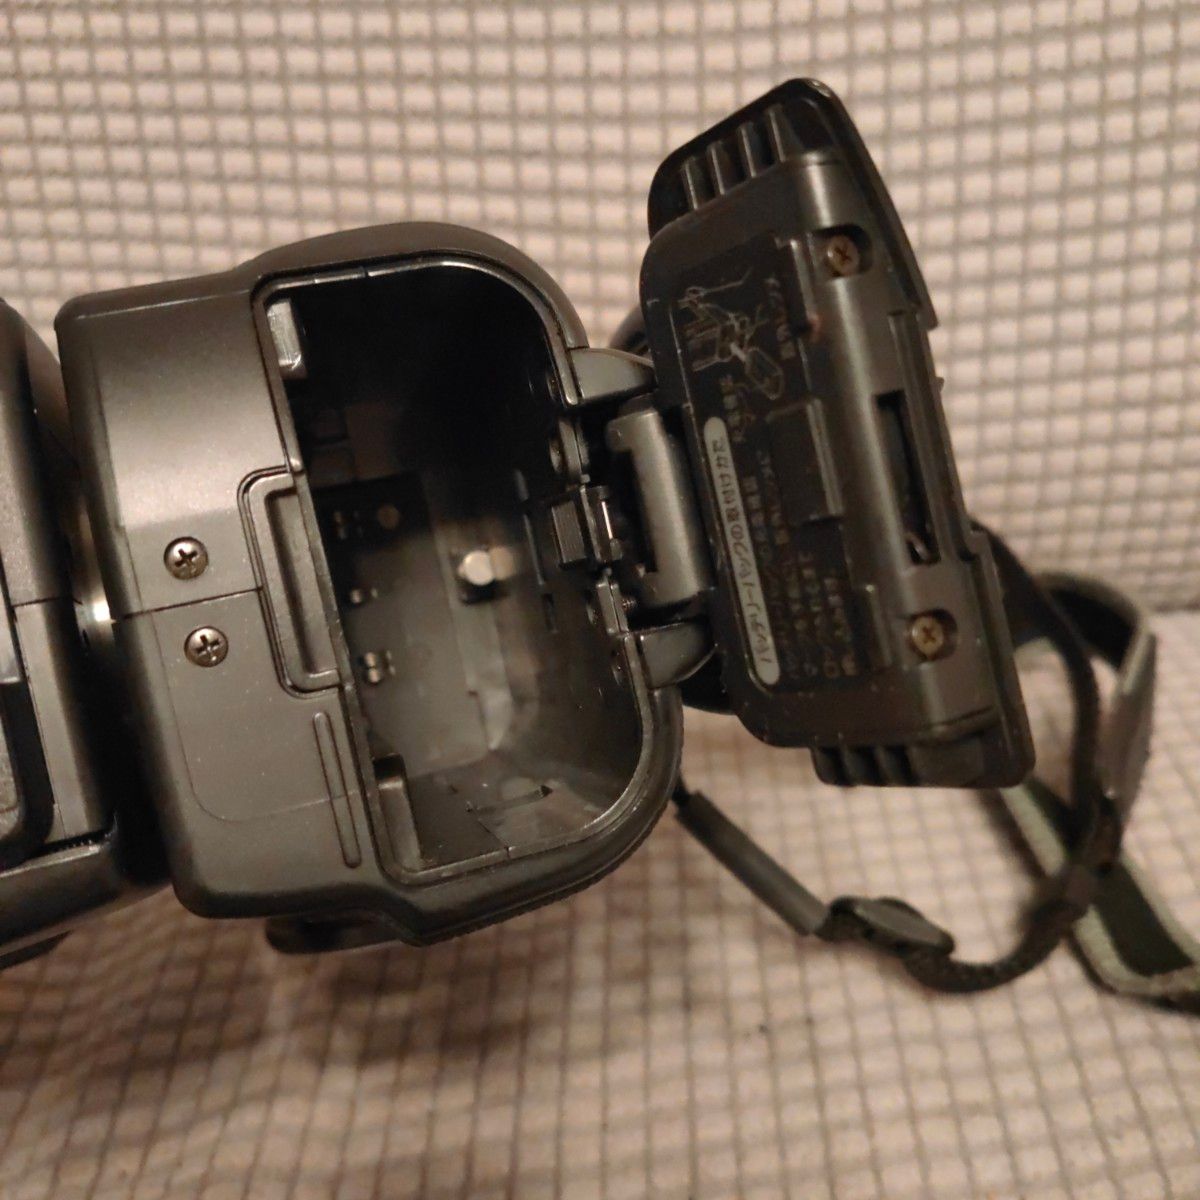 【訳あり】SHARP　Viewcam VL-HL3　Hi8　8mmビデオカメラ シャープ